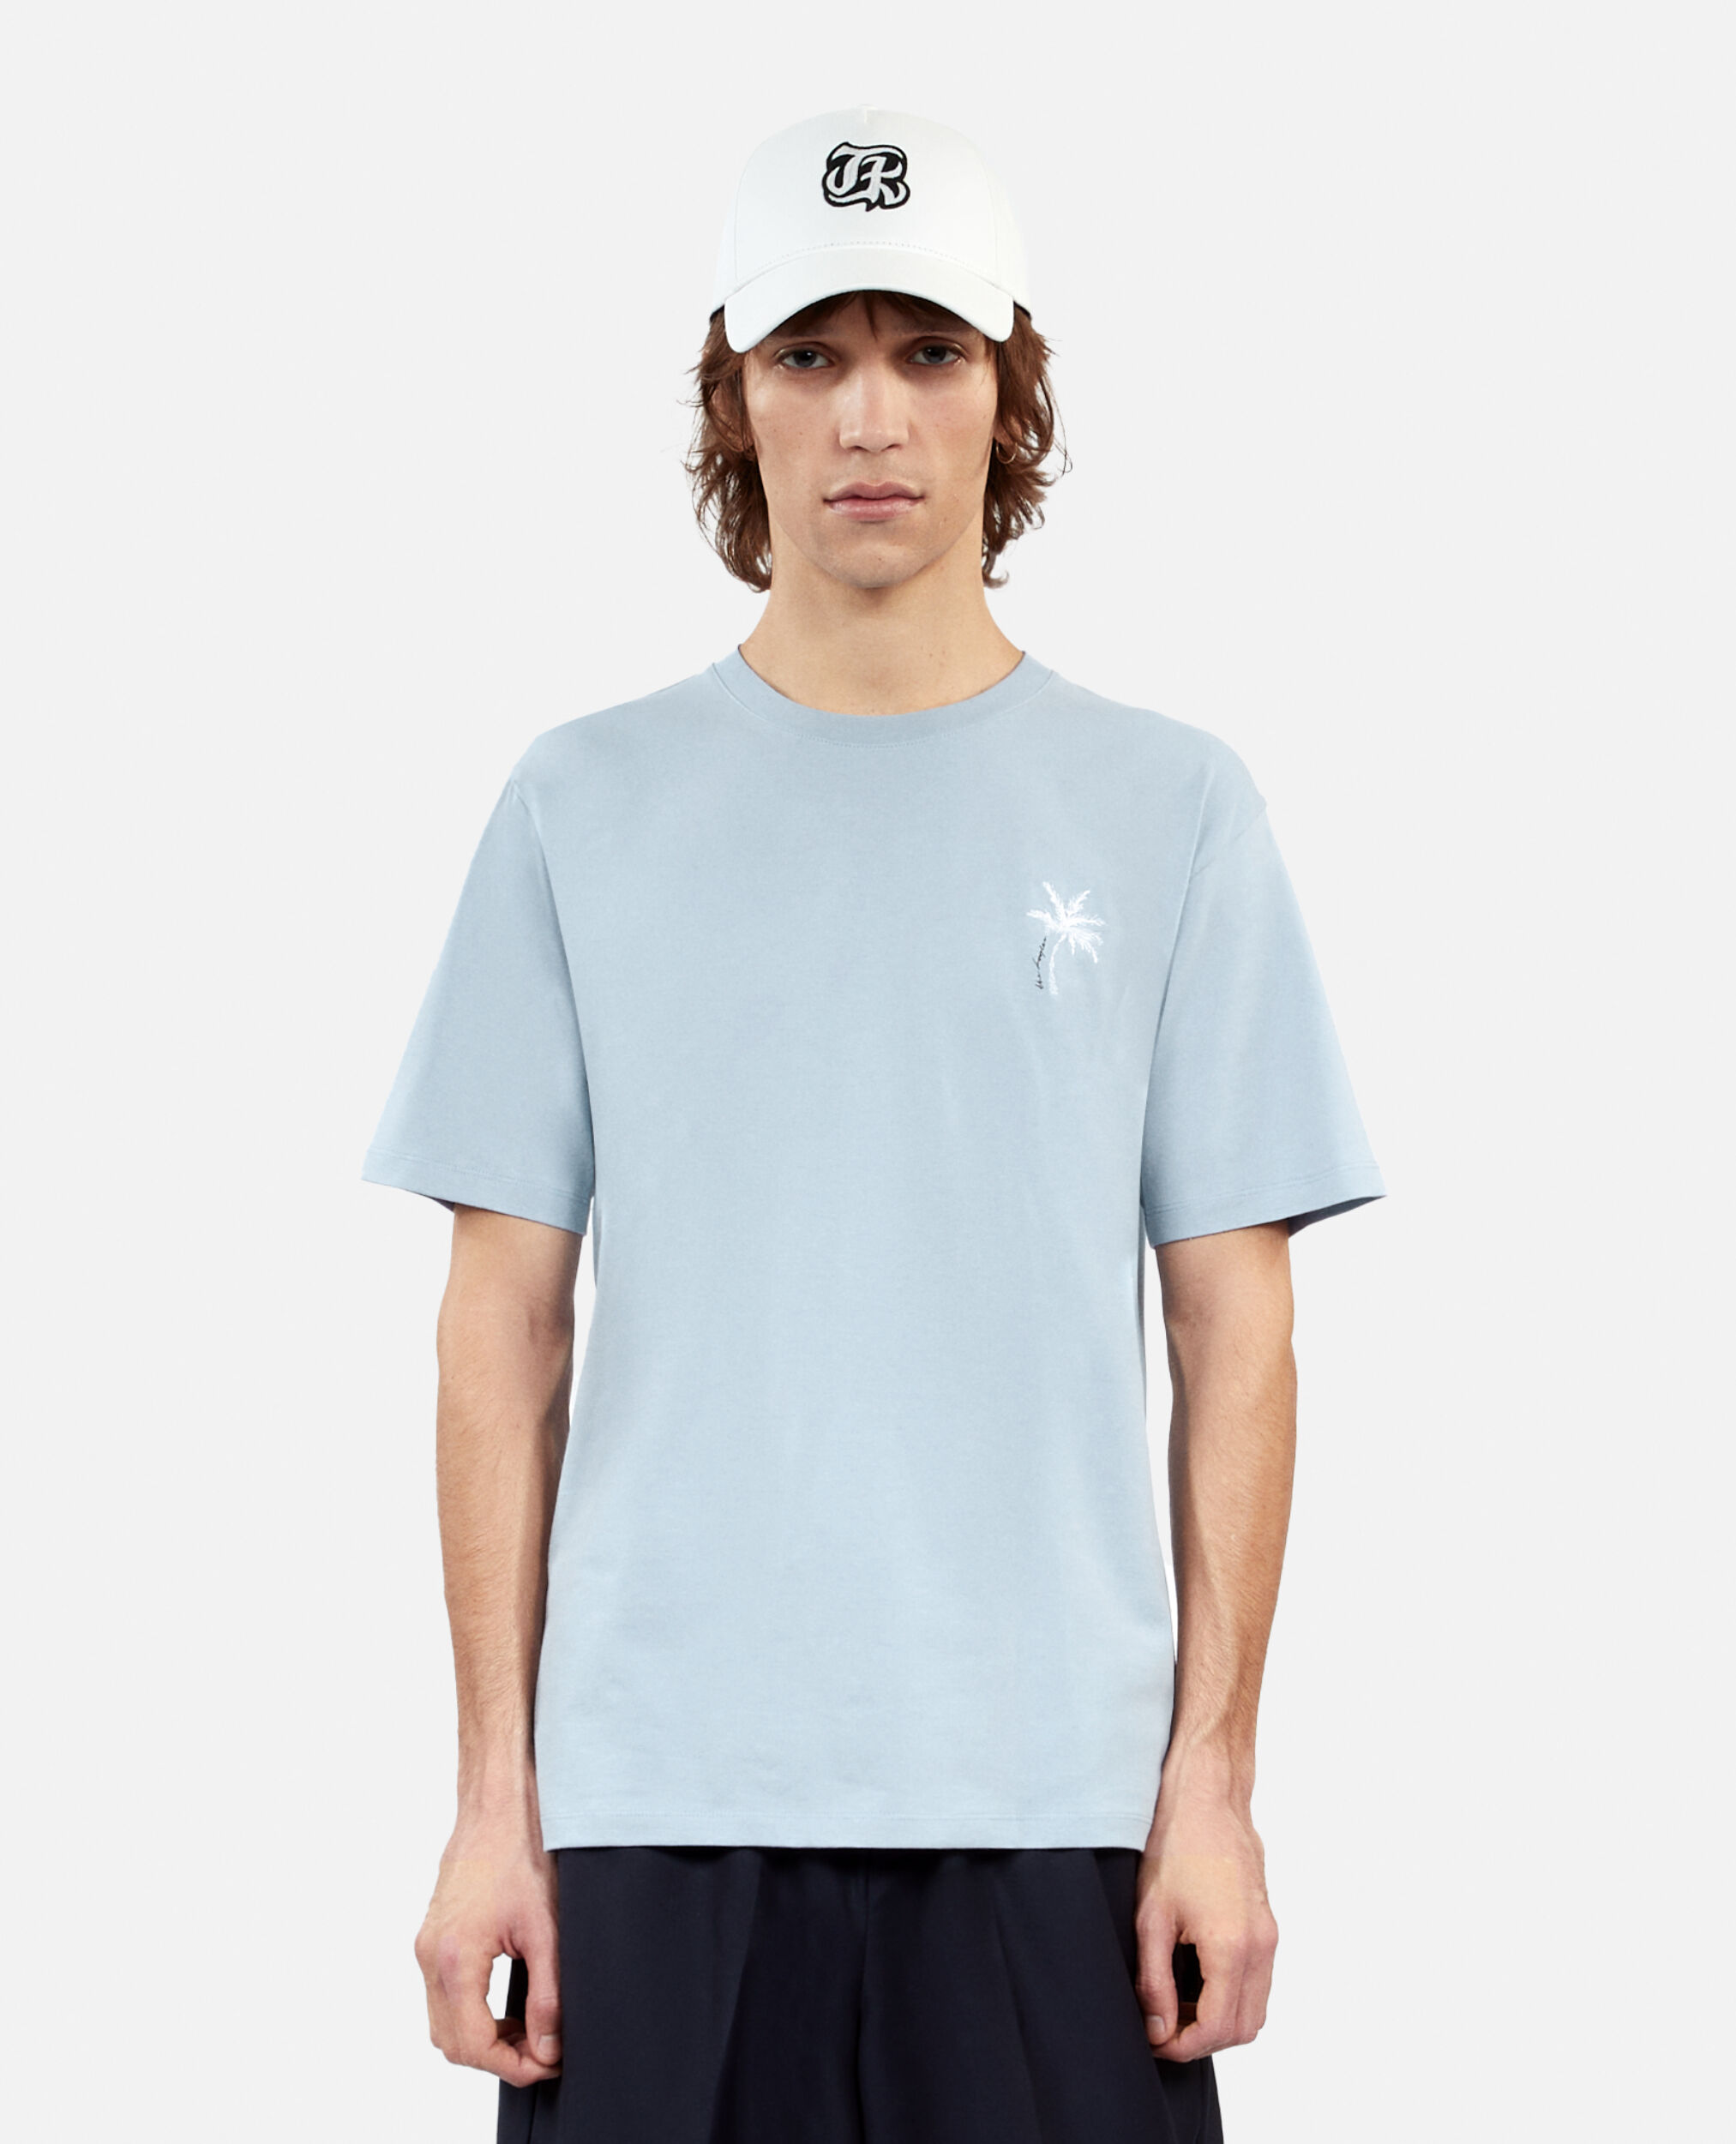 T-shirt bleu ciel avec broderie Palm tree, BLUE, hi-res image number null